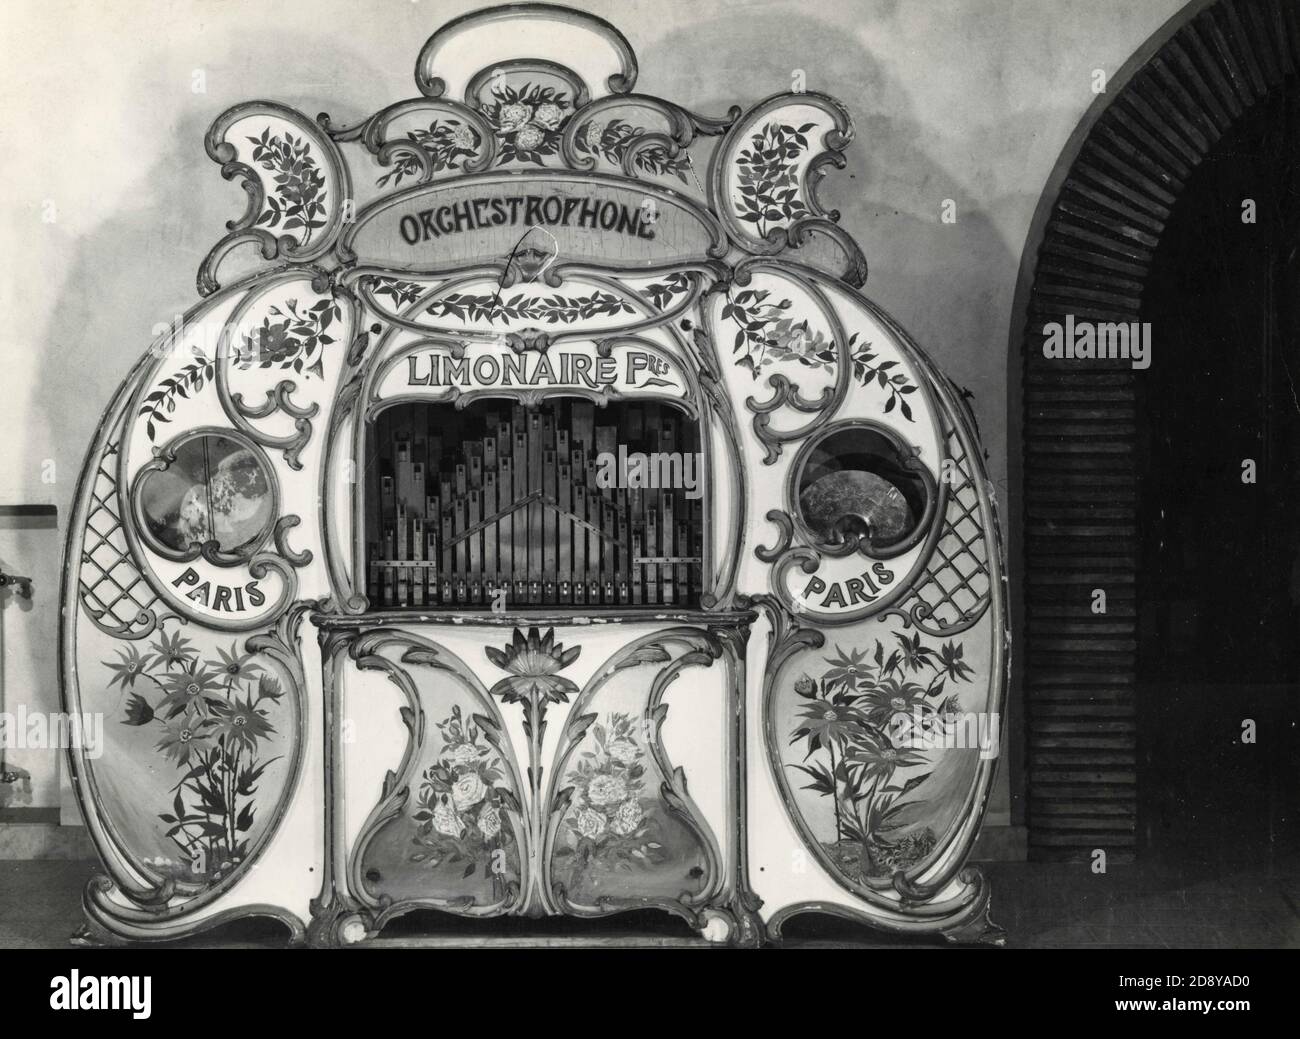 Limonaire Frères organo di strada Orchestrofono con facciata decorata Foto Stock